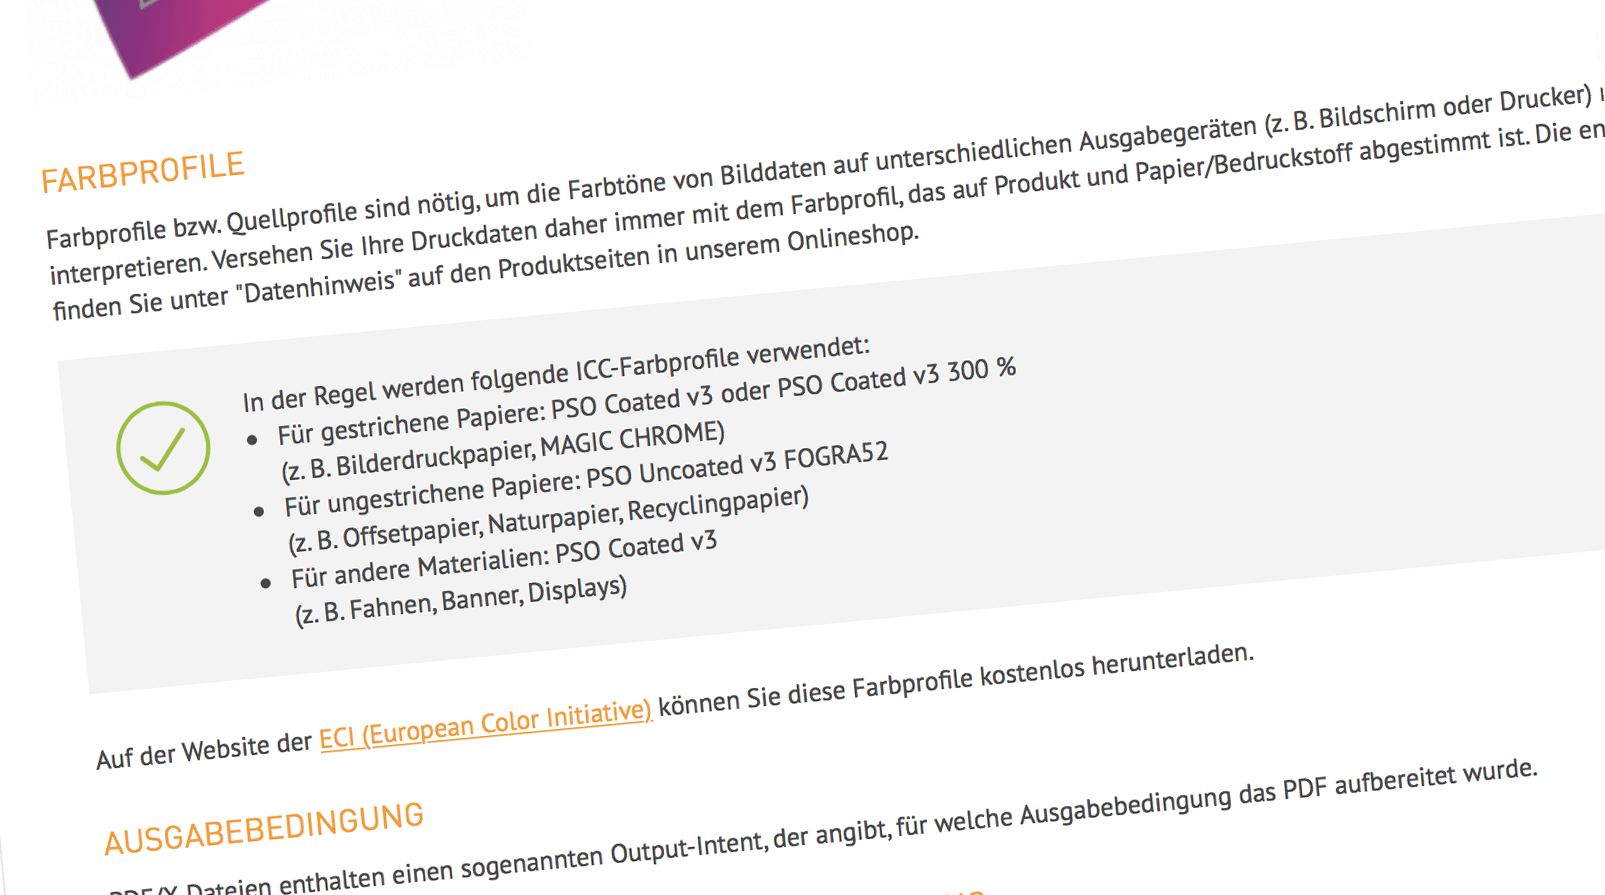 DieDruckerei.de hat auf die neuen Normen PSOCoatedV3 und PSOUncoatedV3 umgestellt